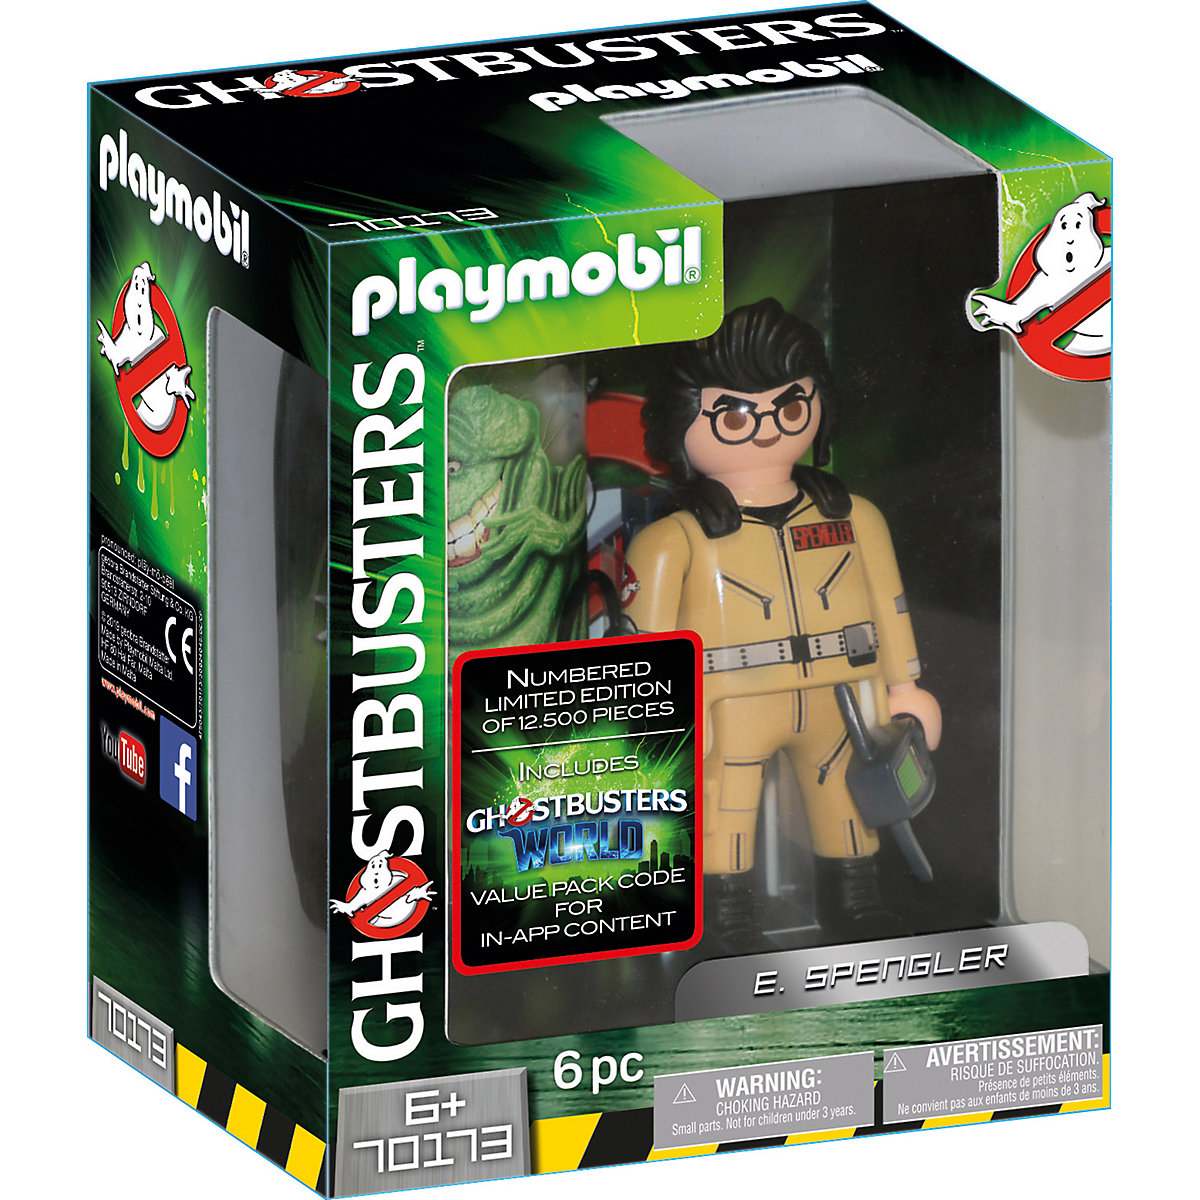 Playmobil 70173 Ghostbusters E. Spengler